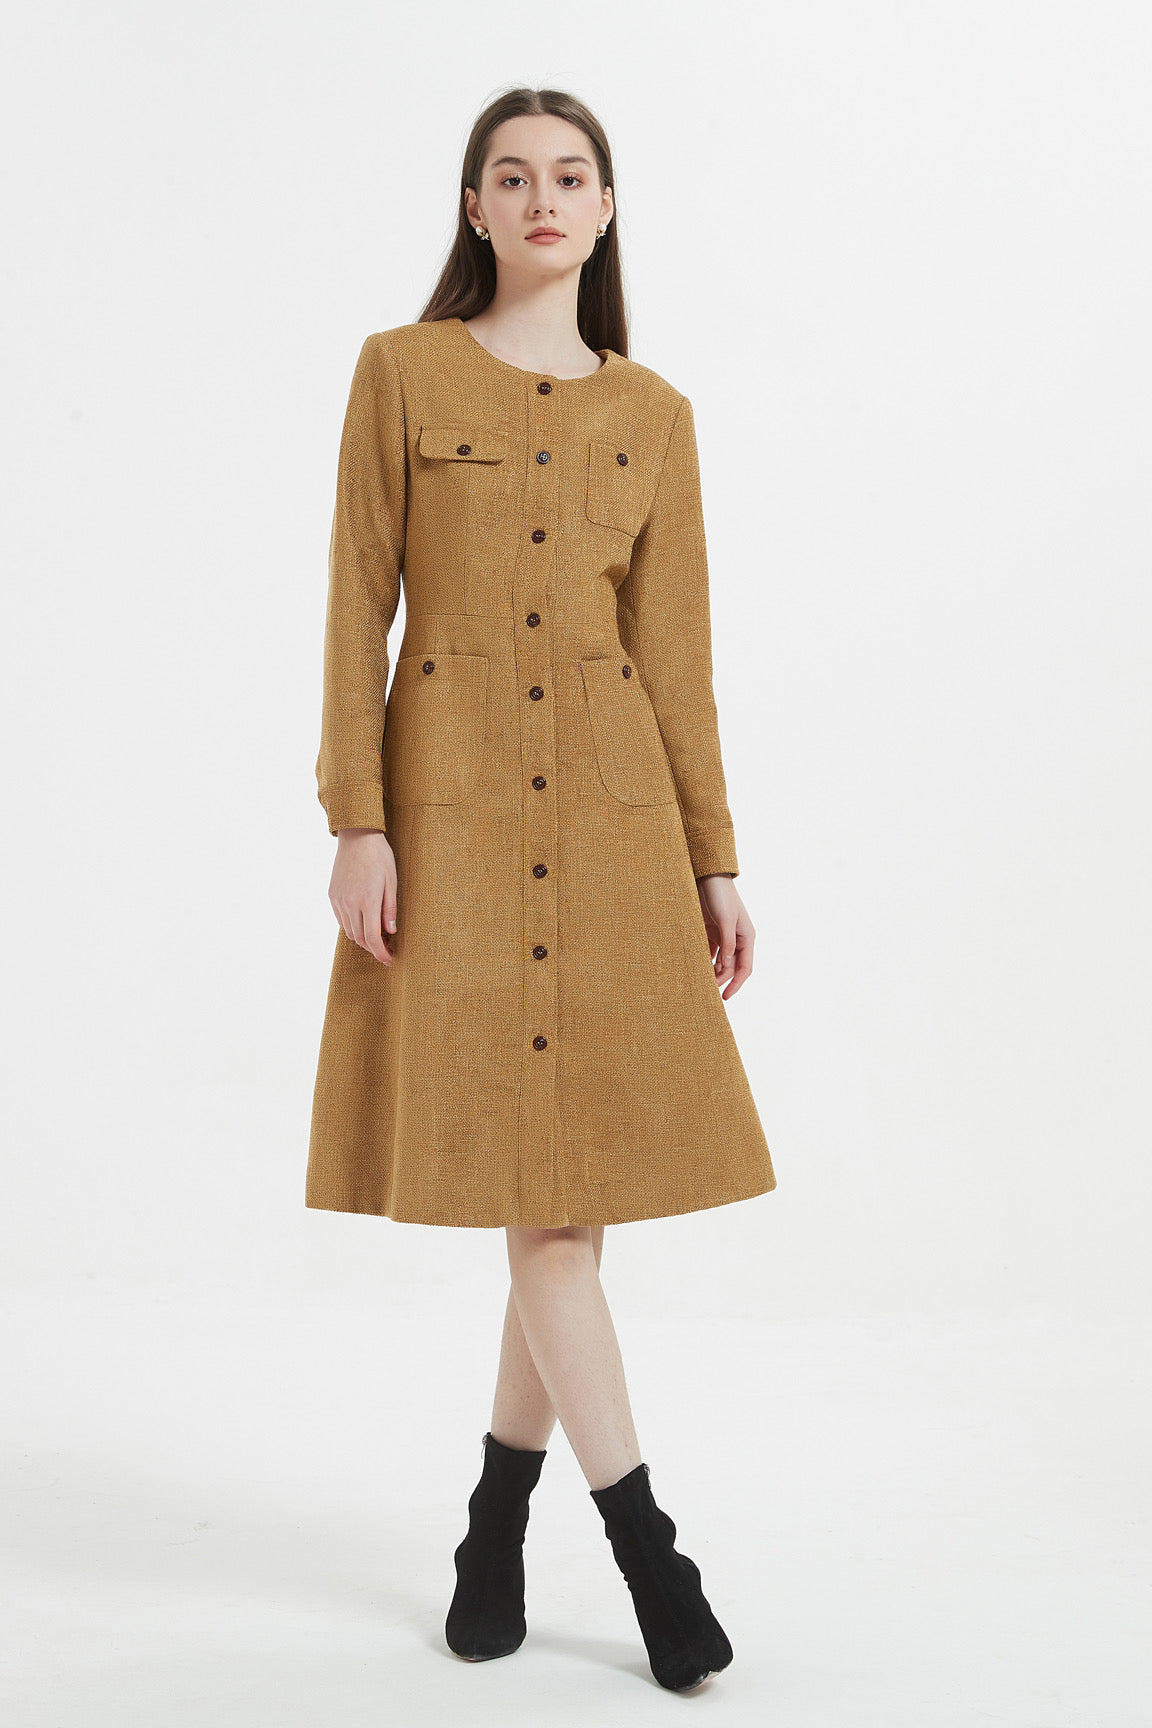 Menswear Inspired Womens Sophia Jacket In Brown Tweed